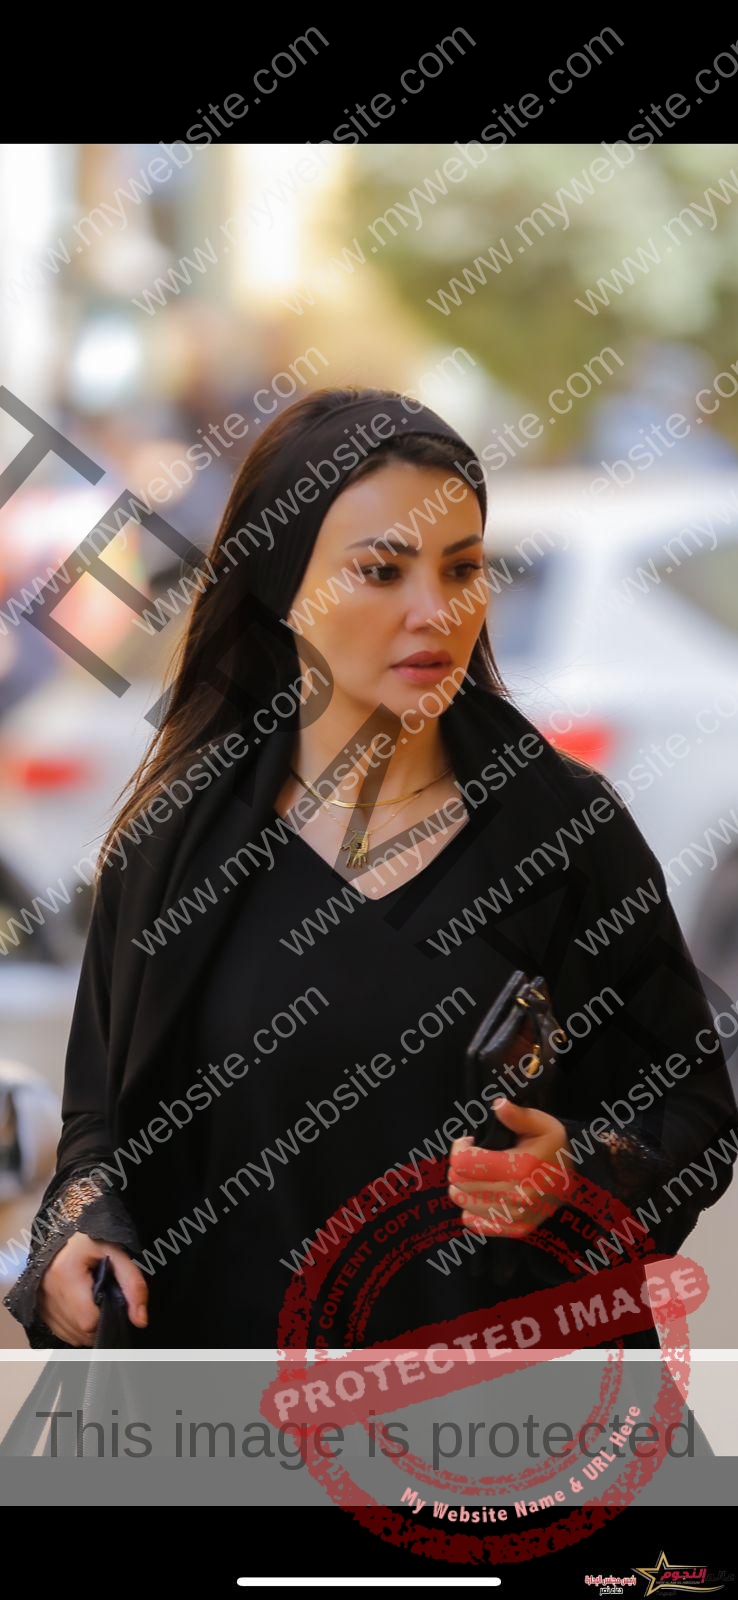 دينا فؤاد تقلب أحداث مسلسل "حق عرب" بعد القبض عليها في الحلقة 15